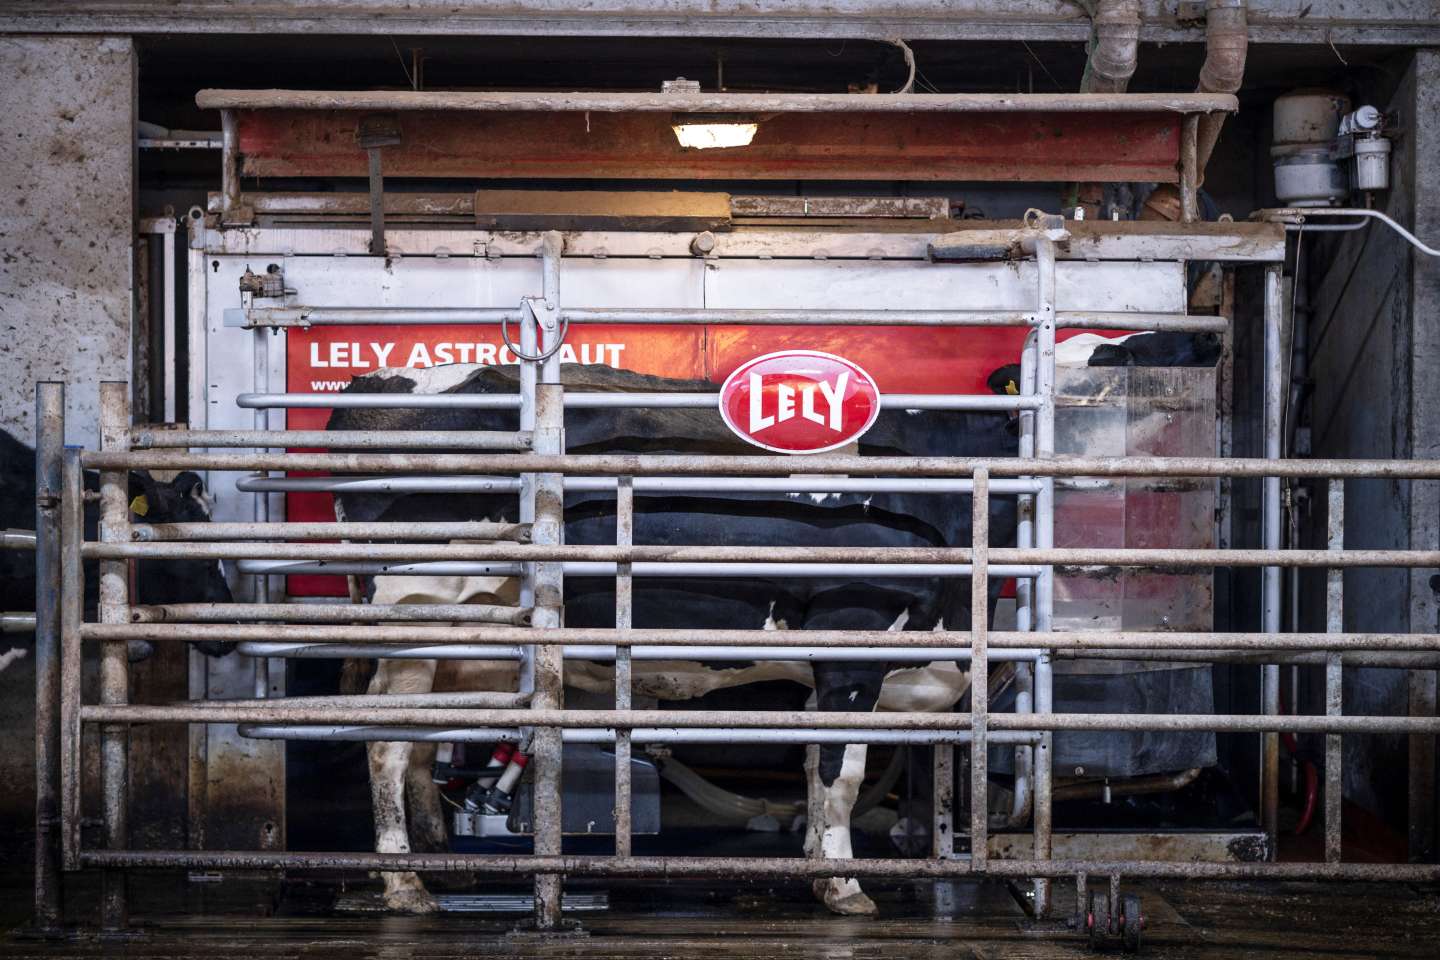 Dans le Nord, la traite des vaches s’expose en réalité virtuelle pour promouvoir les métiers agricoles